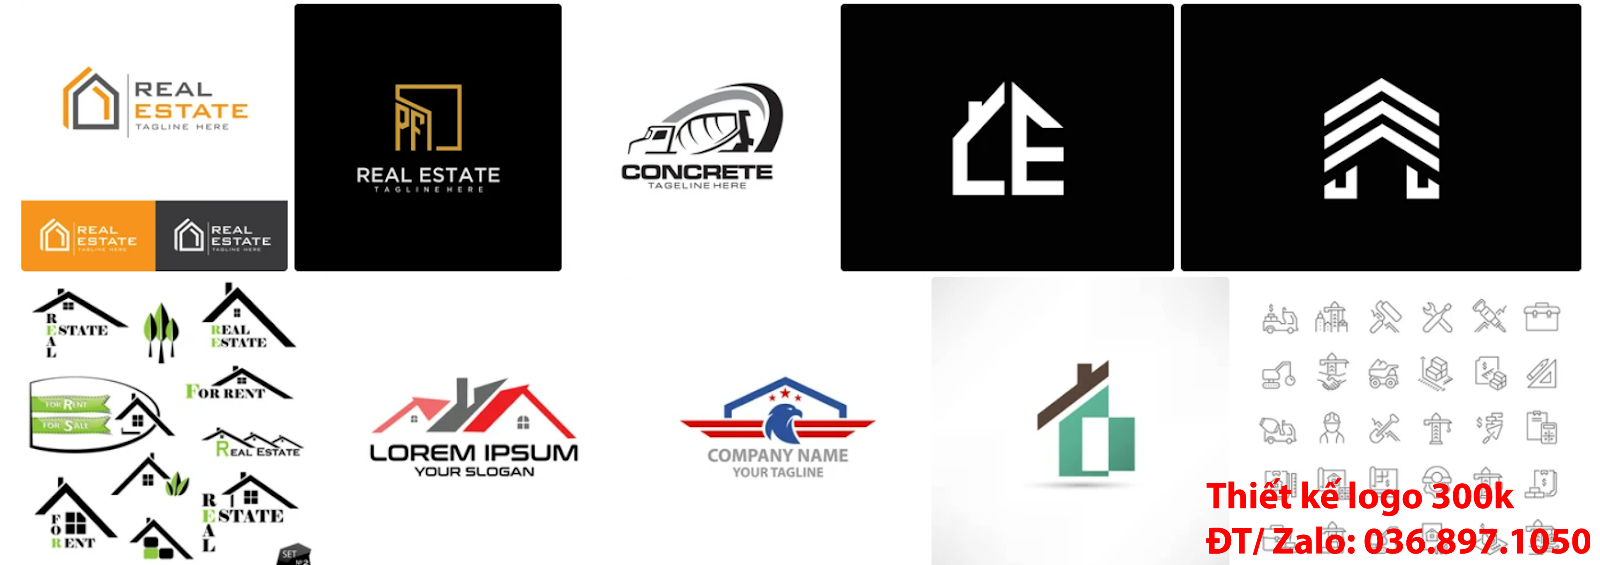 Dịch vụ làm mẫu thiết kế logo công ty kiến trúc đẹp nhất hiện nay đơn giản 300k, 500k